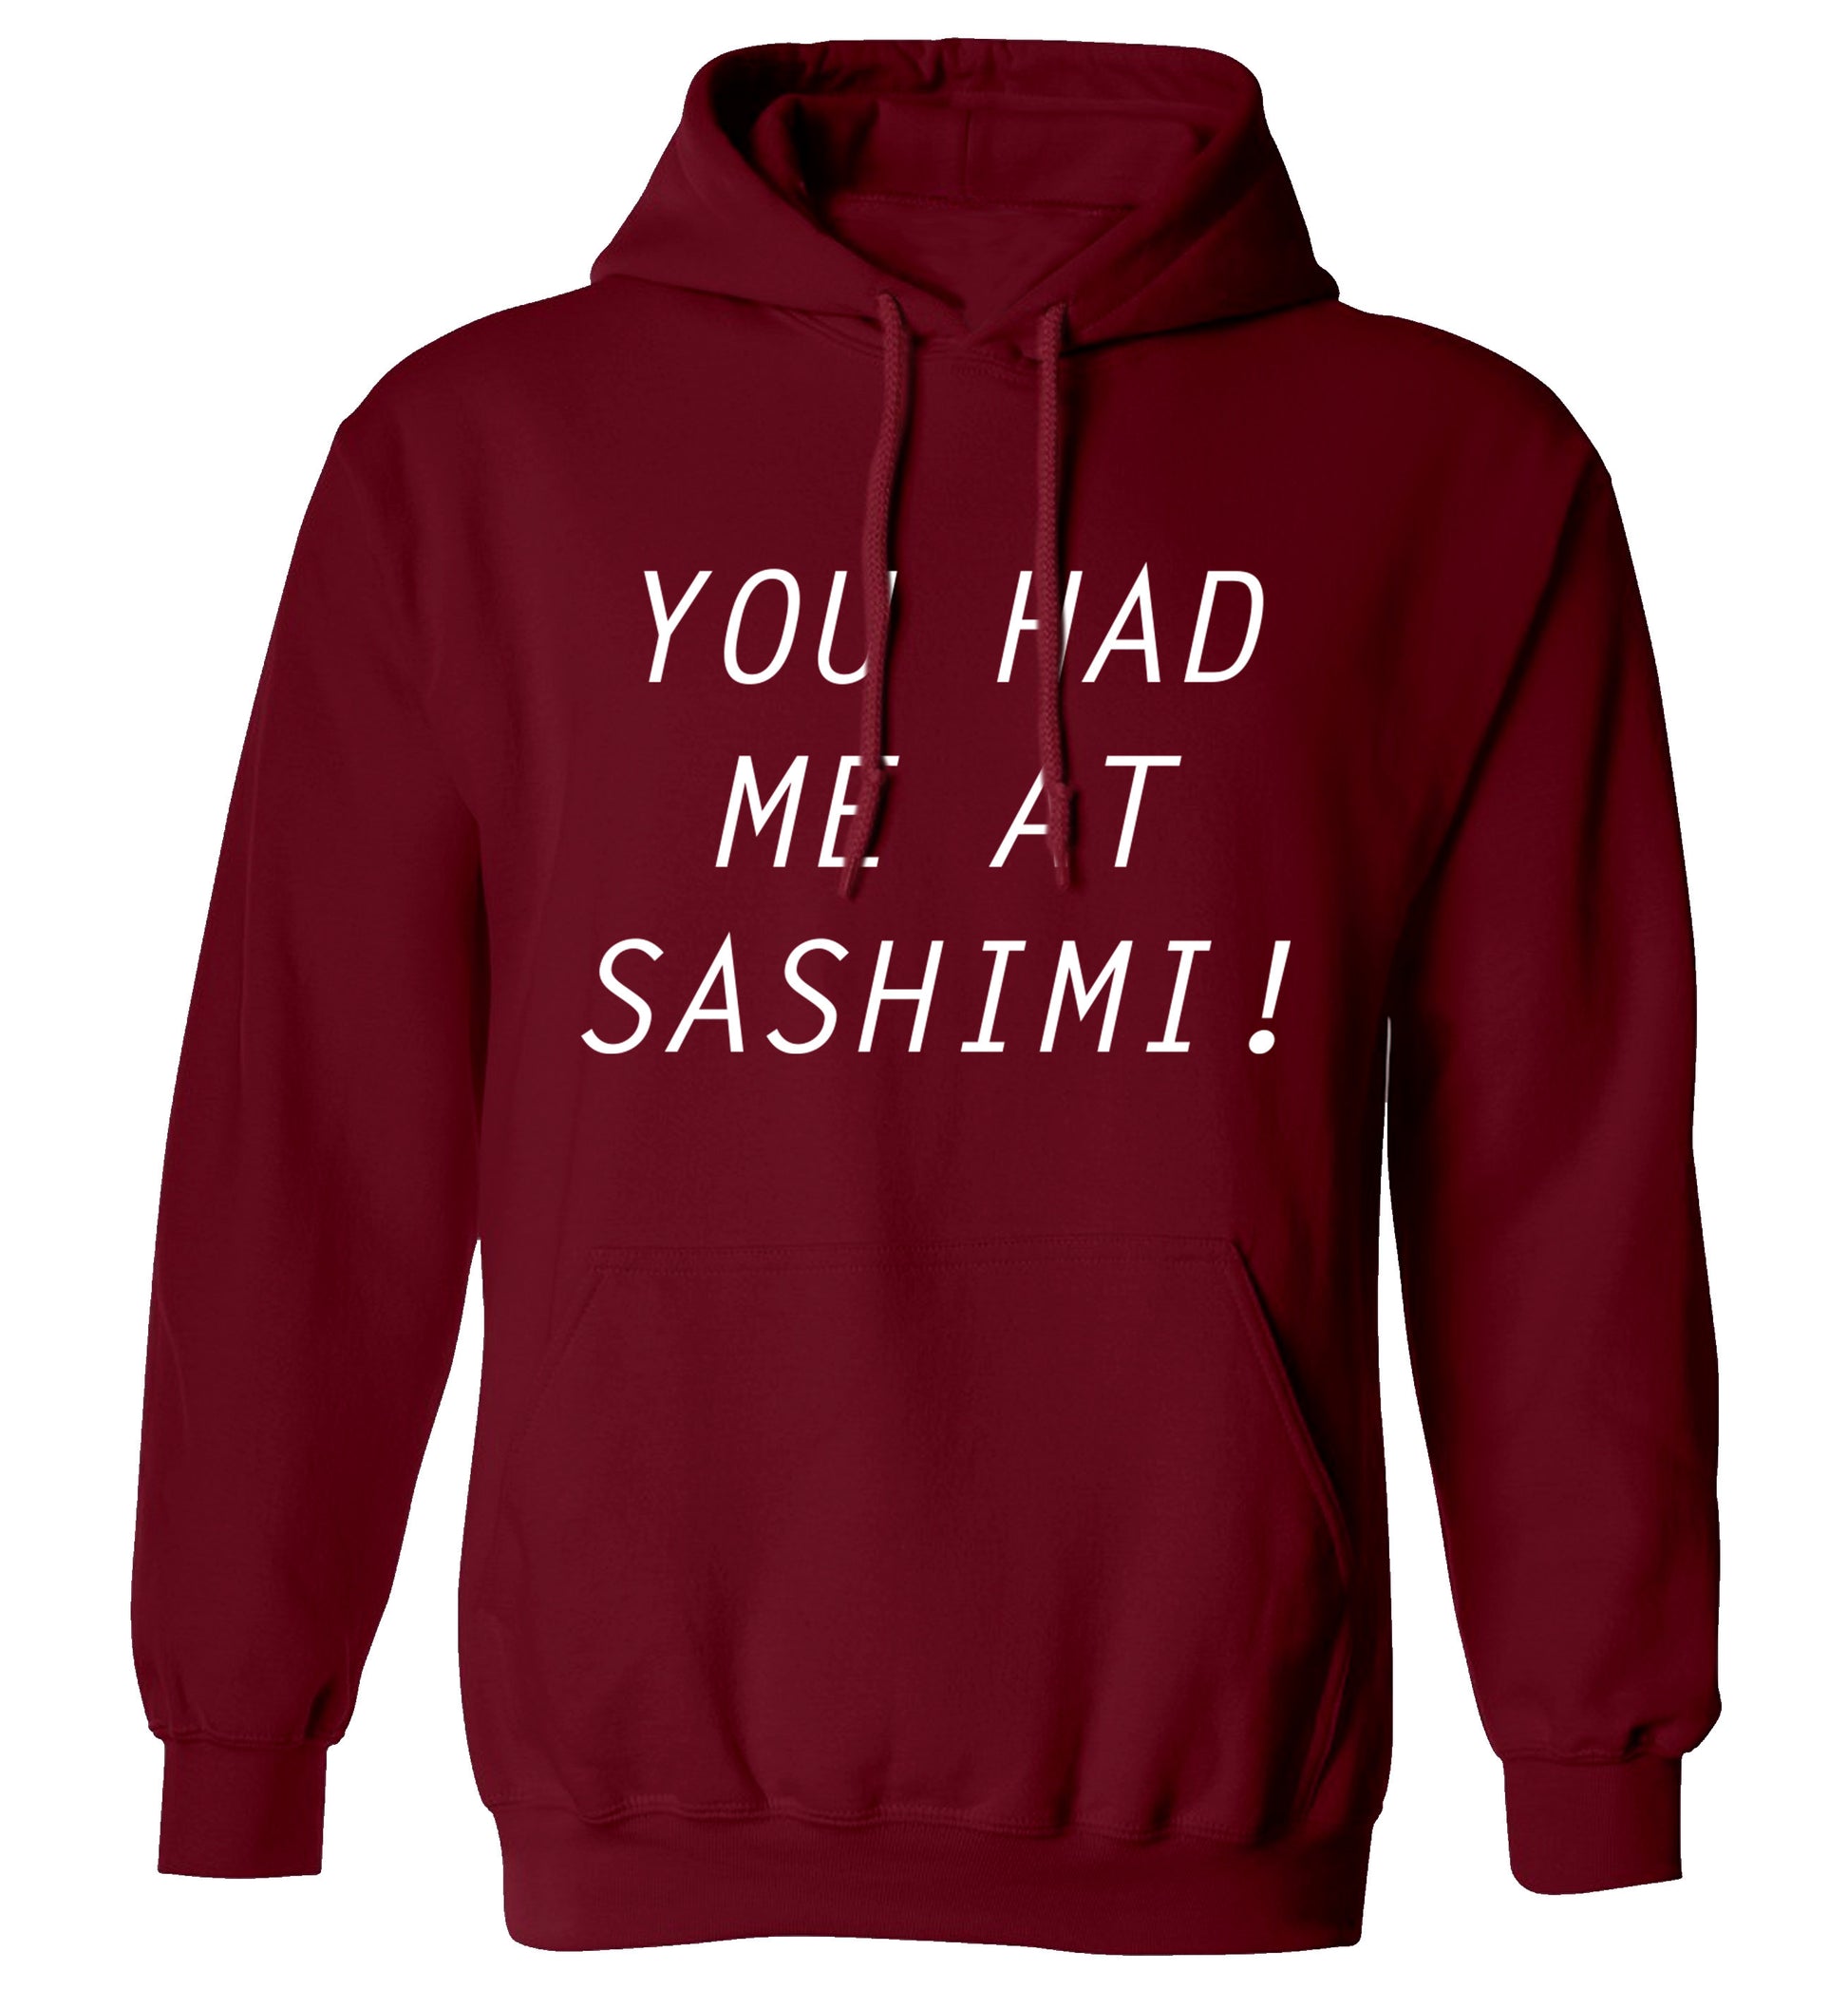 You had me at sashimi adults unisex maroon hoodie 2XL